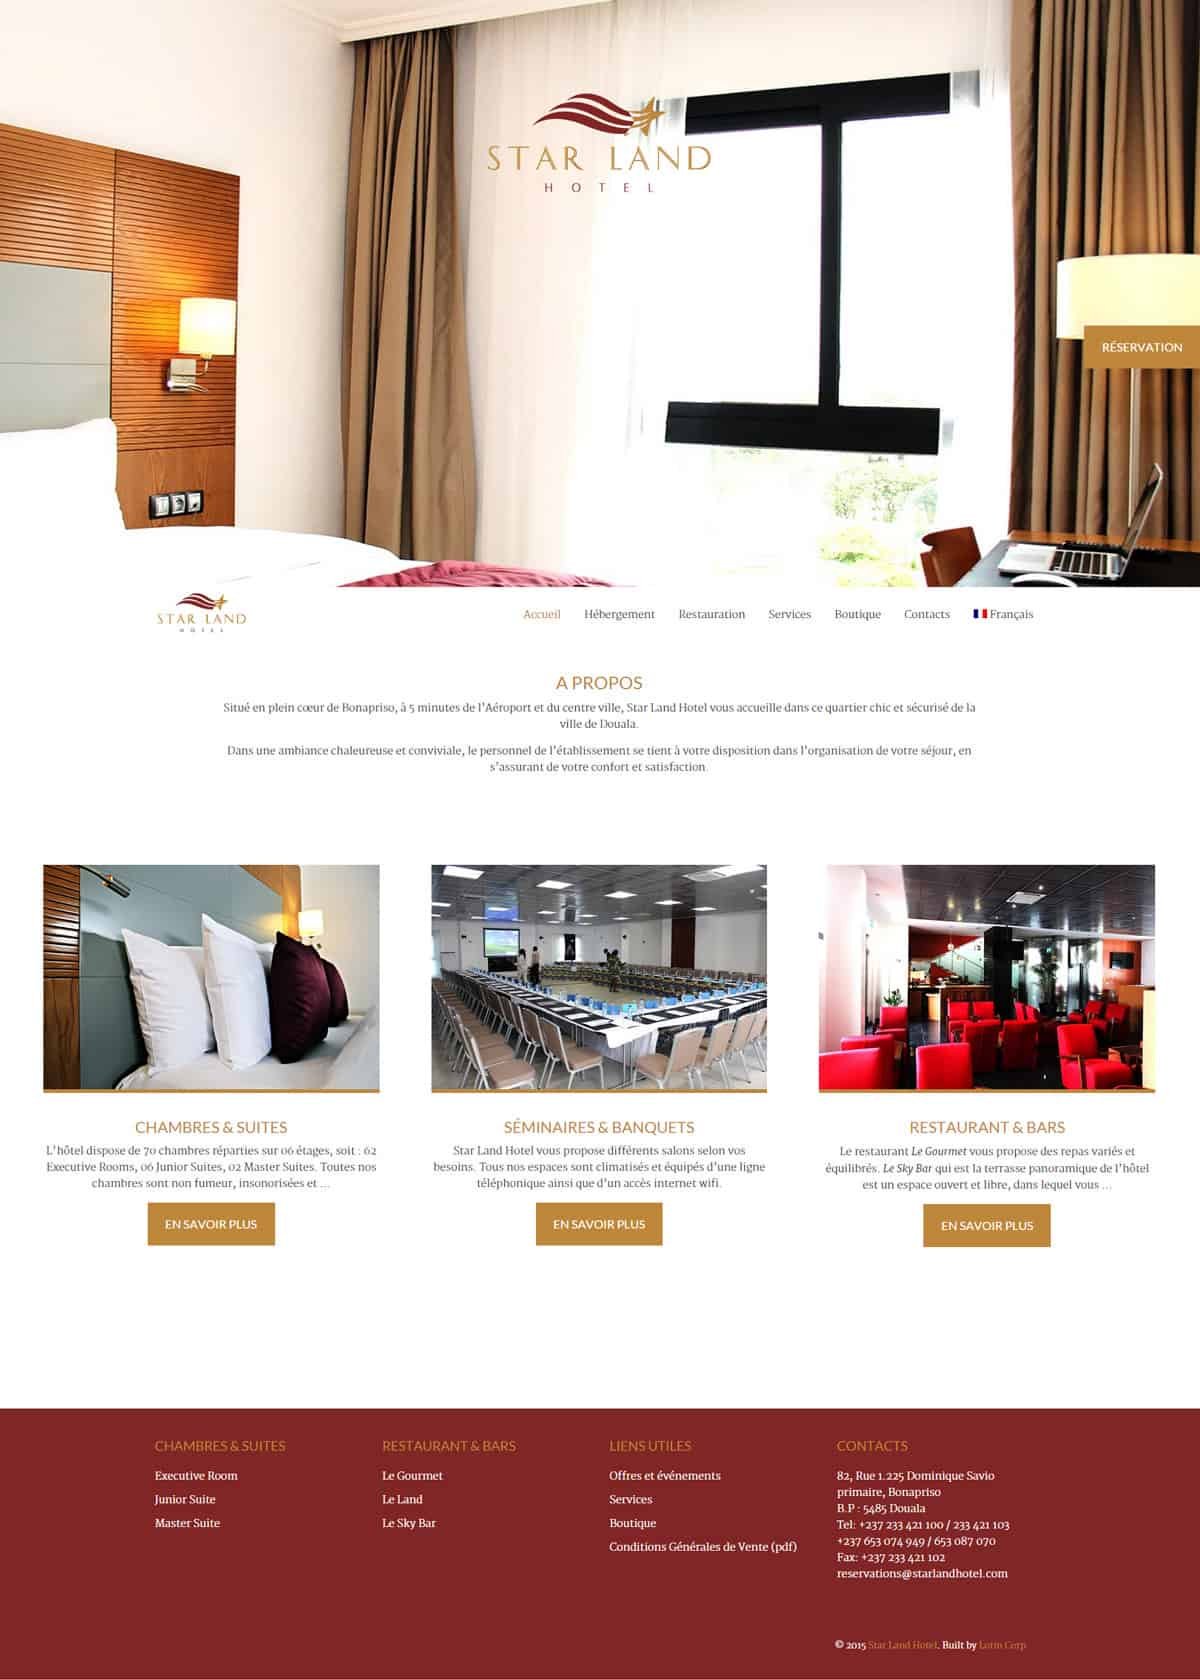 refonte de site web : La page d'accueil propose des images plein écran pour immerger le visiteur dans l'univers de l'hôtel, avec un bouton de réservation ostensible.